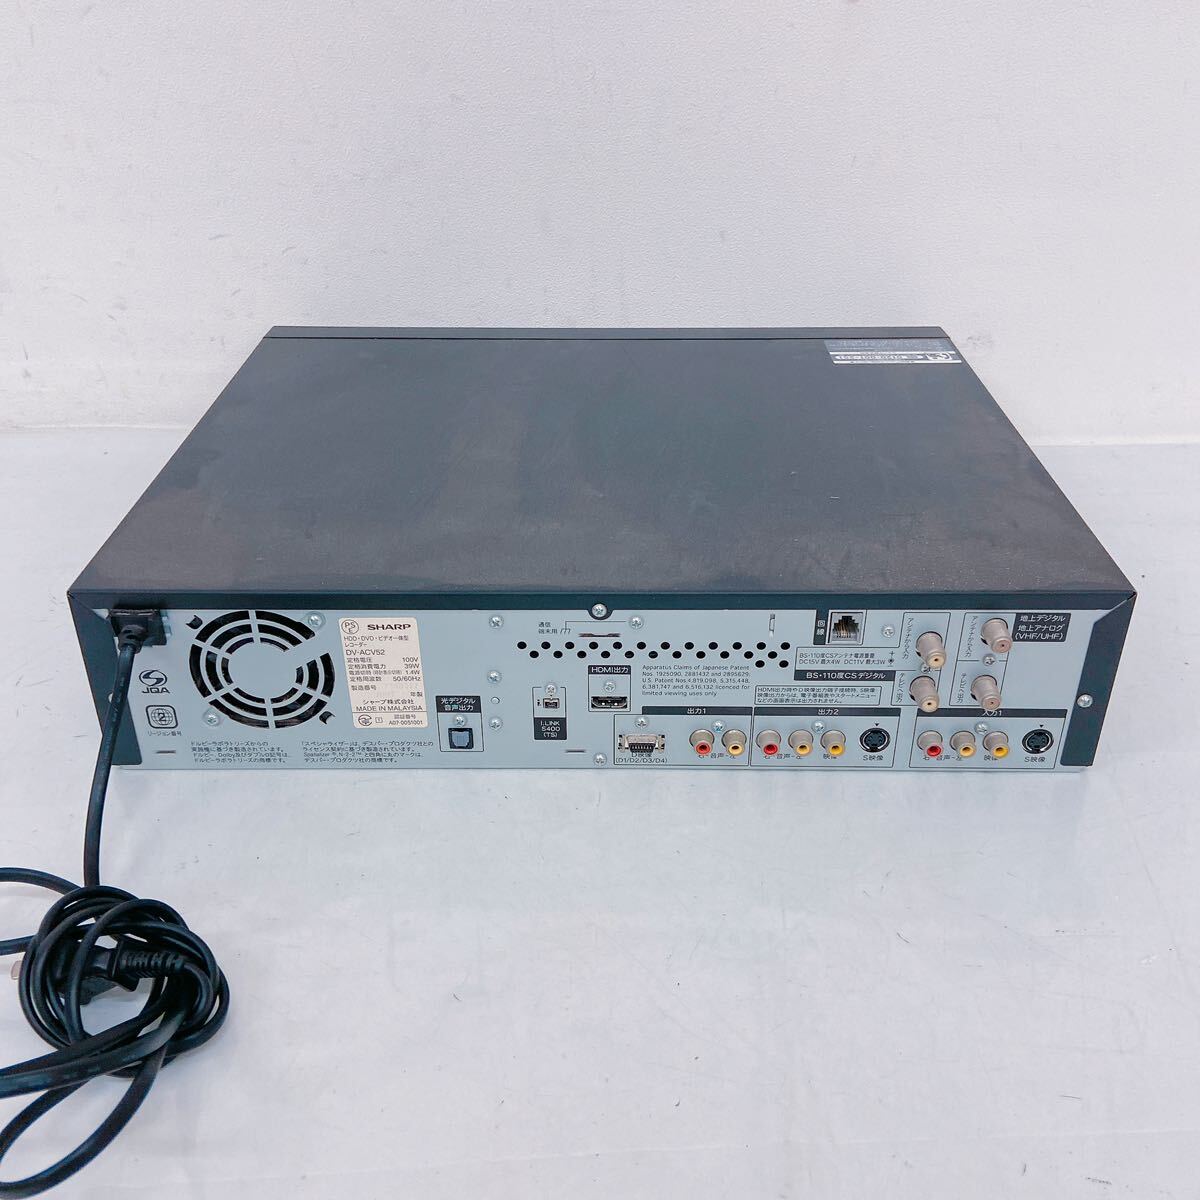 5C018 SHARP シャープ AQUOS アクオス DVDレコーダー HI-VISION RECORDER ハイビジョンレコーダー DV-ACV52 _画像3